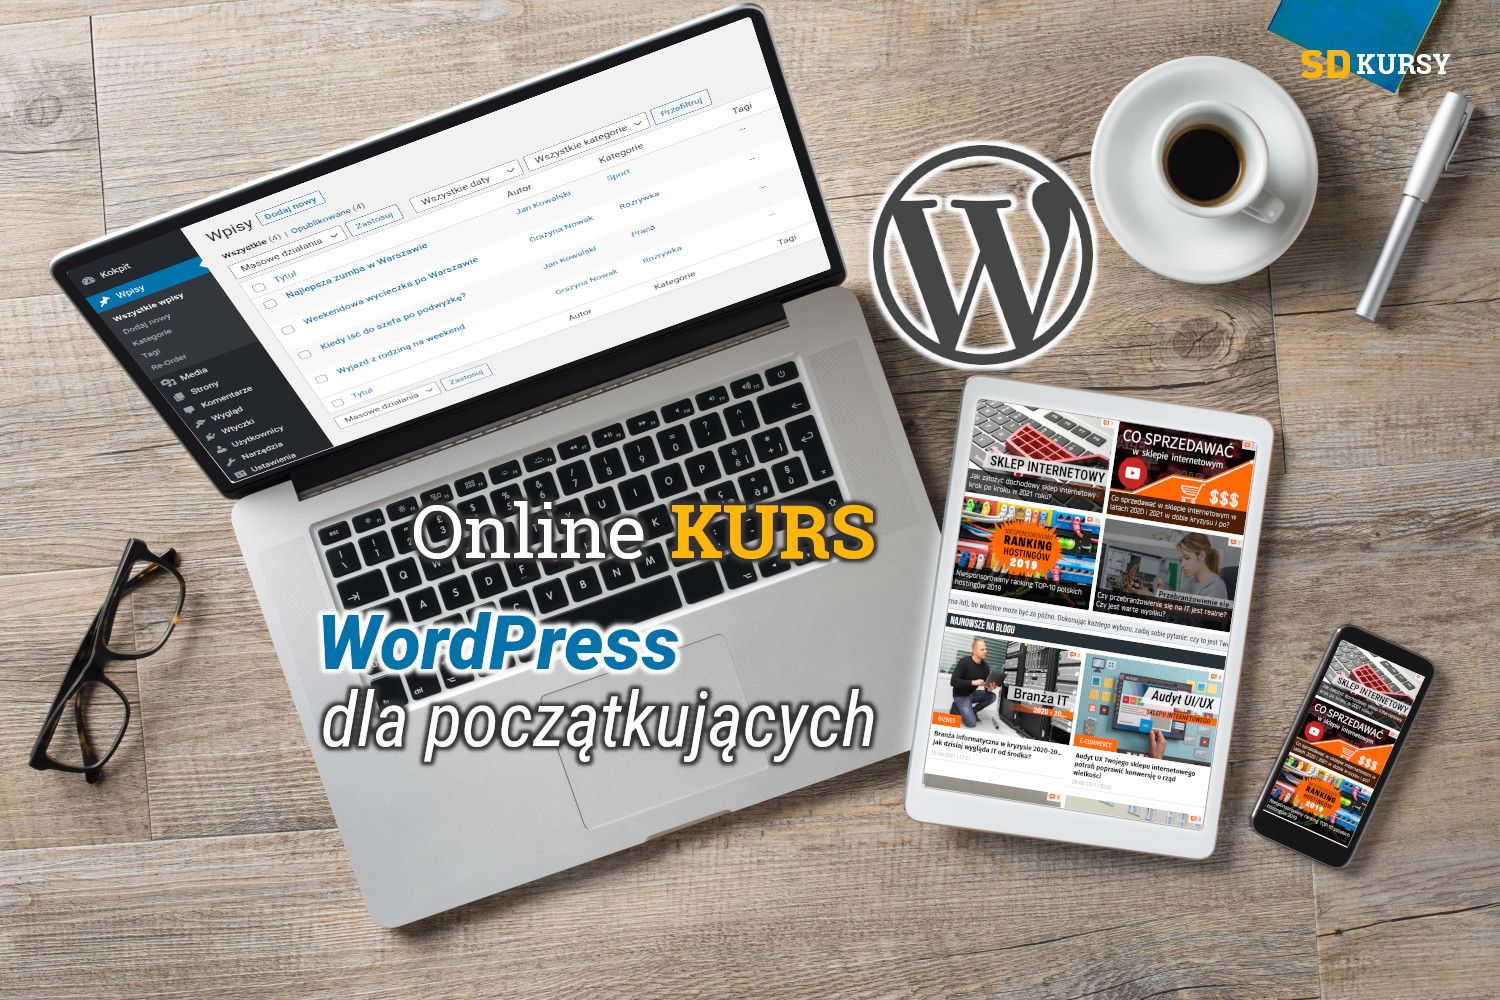 Online kurs: WordPress dla początkujących – tworzenie stron www